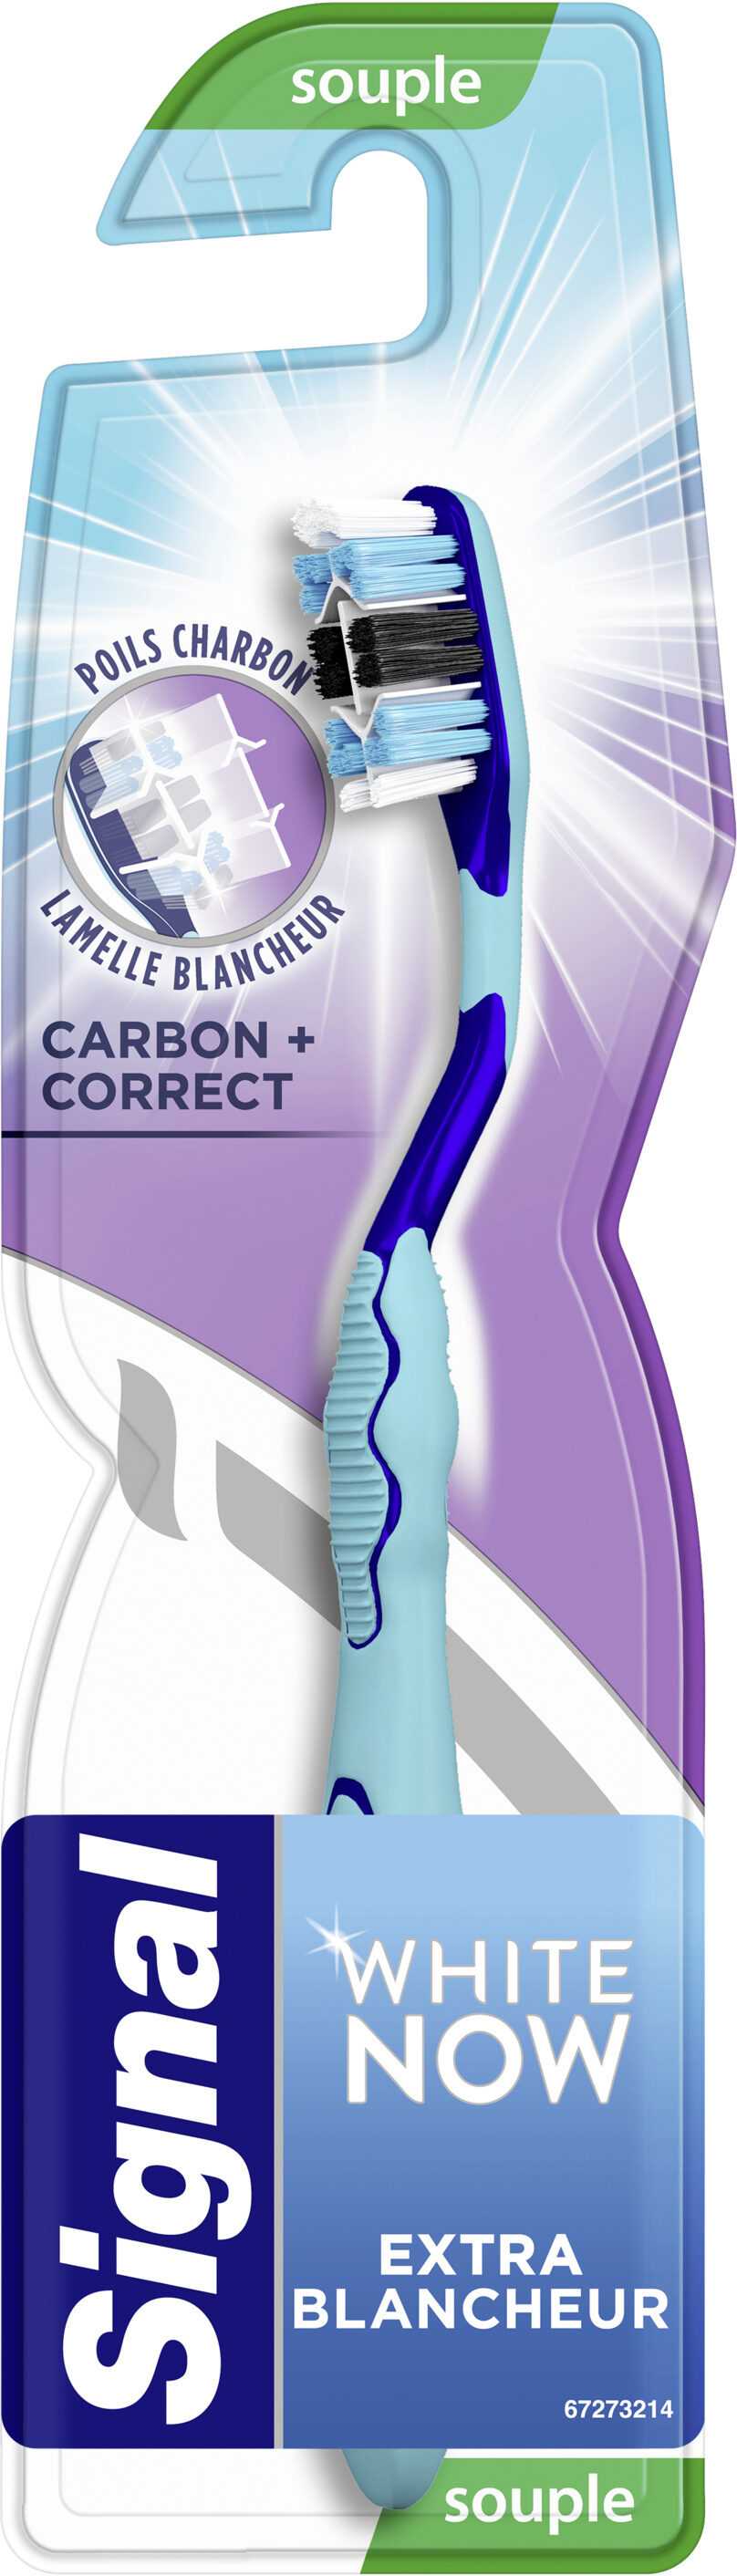 Signal White Now Brosse à Dents Carbon Correct Souple x1 - Produit - fr